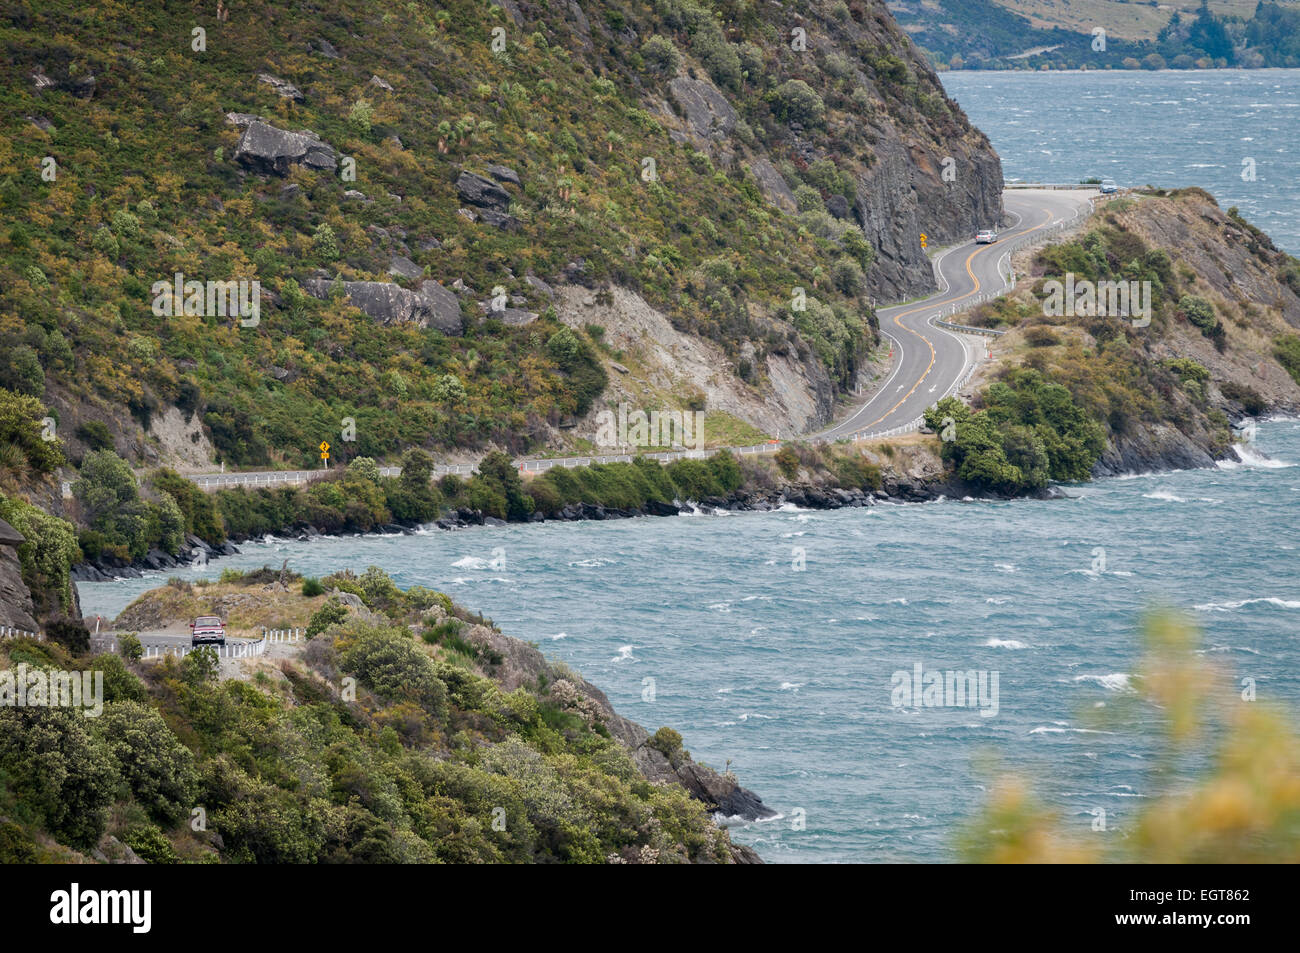 Autostrada statale 6, Kingston Road, accanto al lago Wakatipu, vicino a Queenstown, Otago, South Island, in Nuova Zelanda. Foto Stock